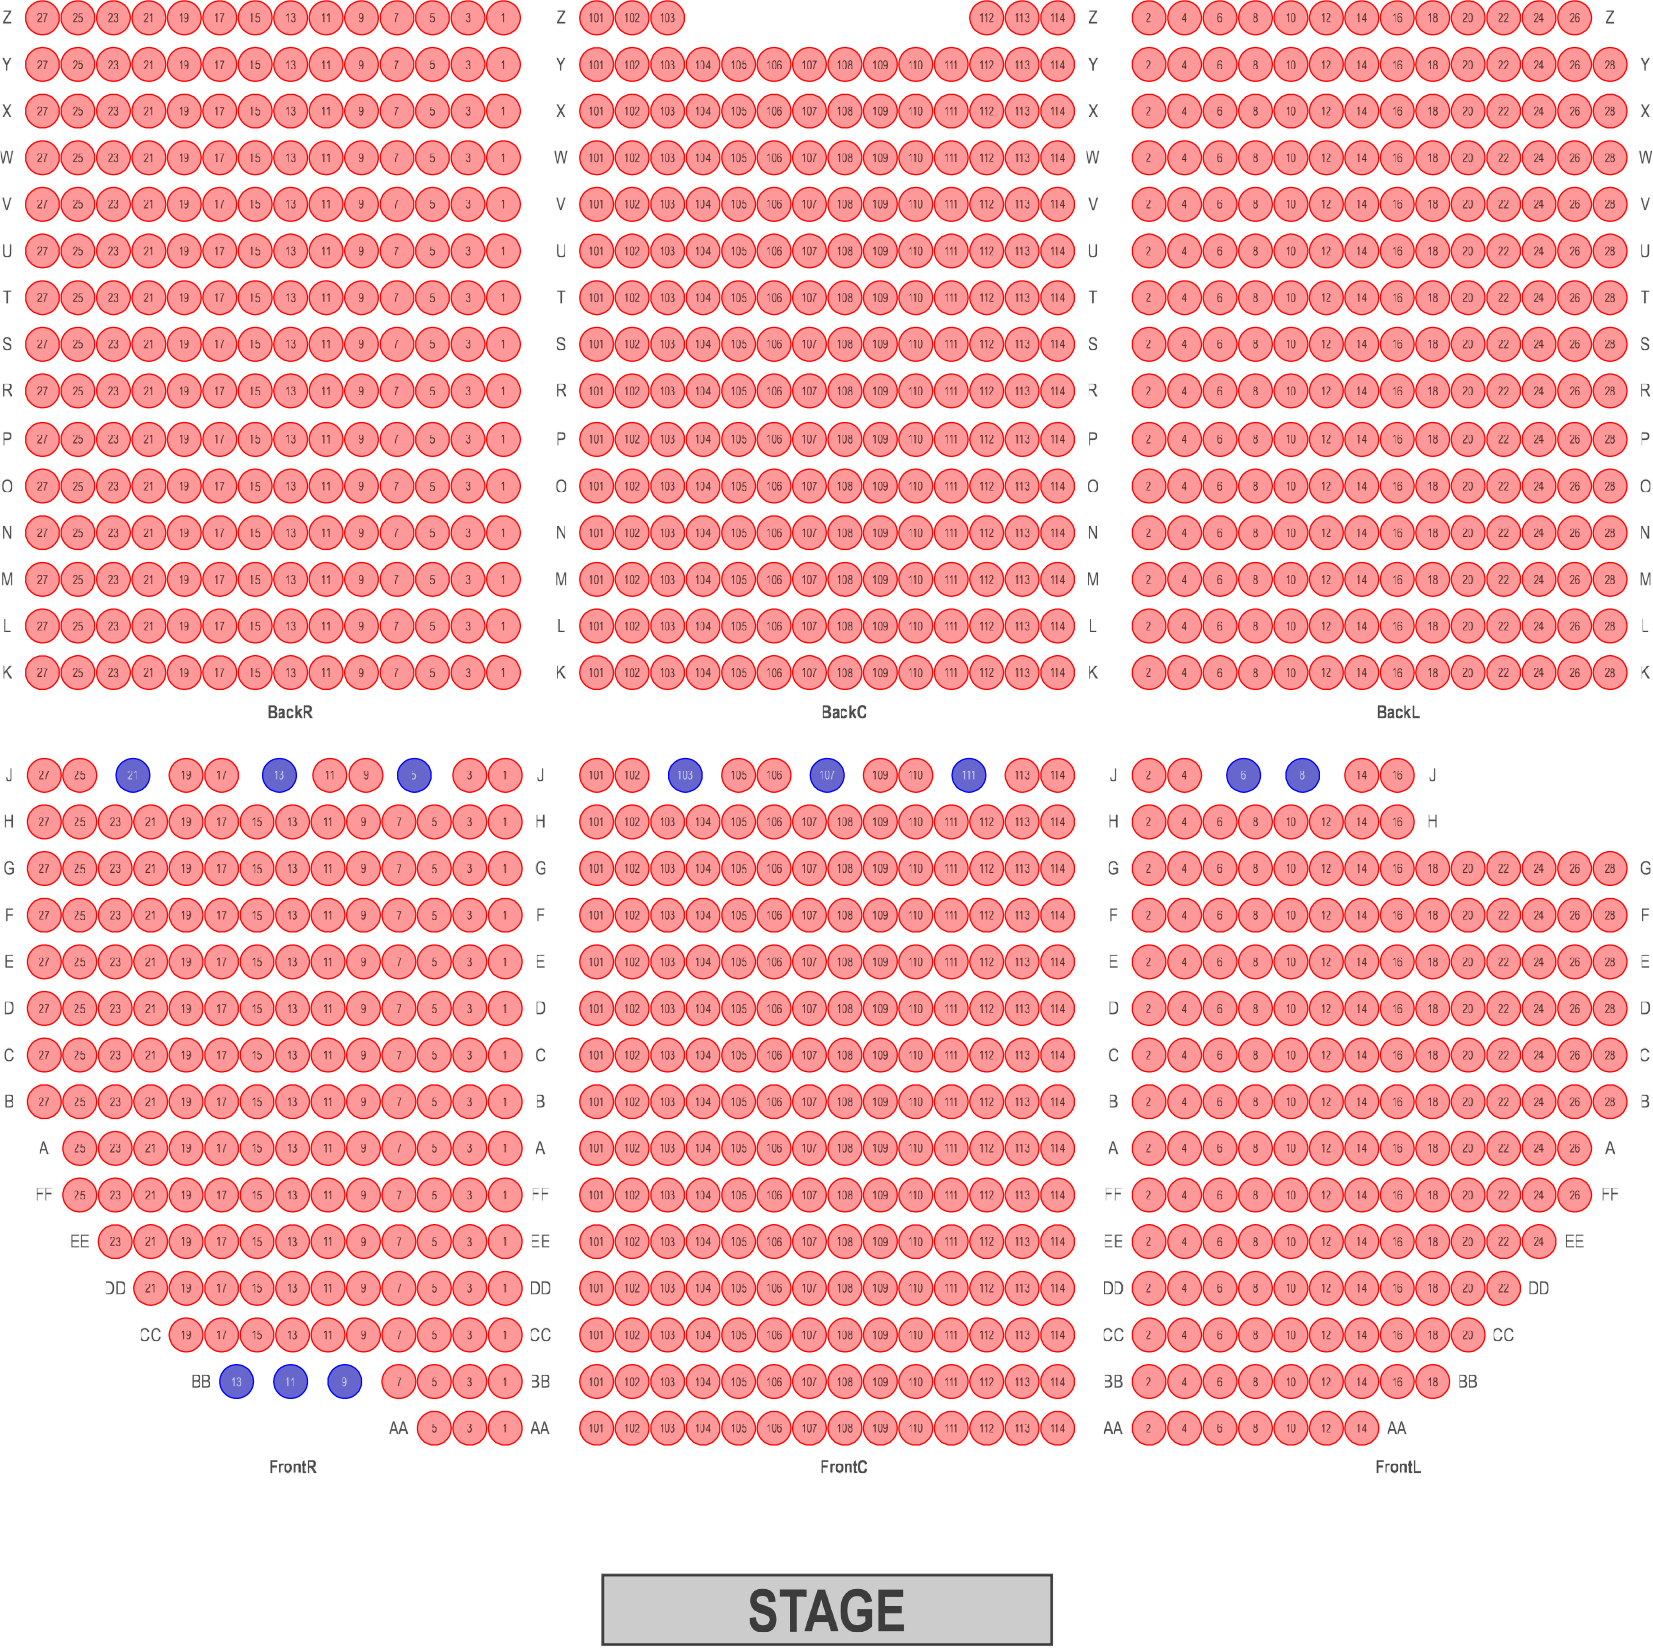 scottish Rite Theatre seating chart